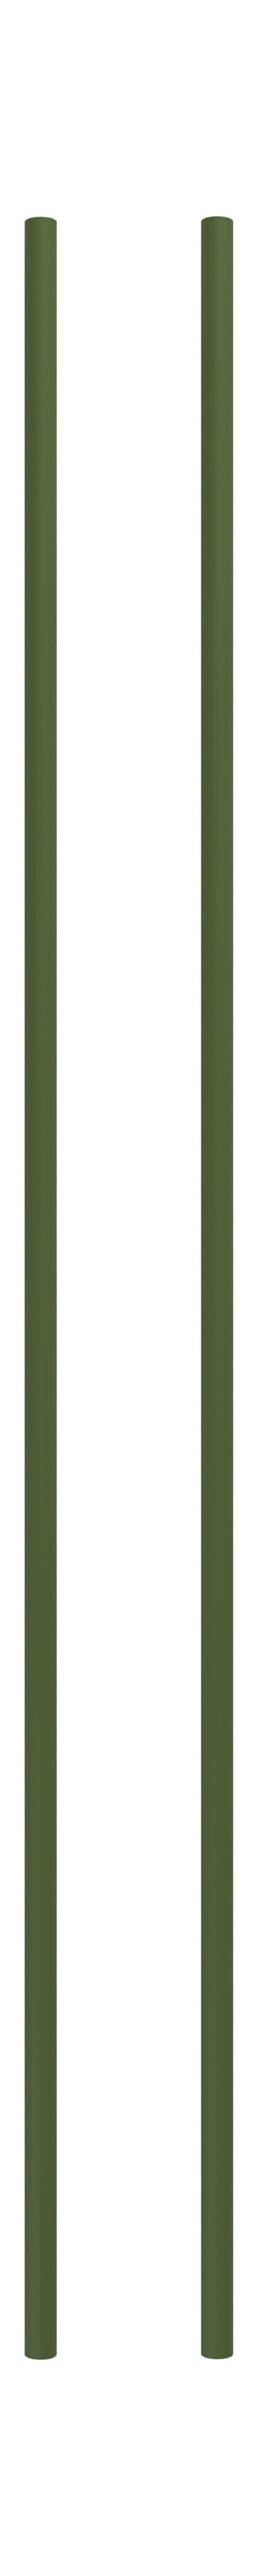 Moebe hyller system/vegghyller 115 cm furu grønt, sett med 2